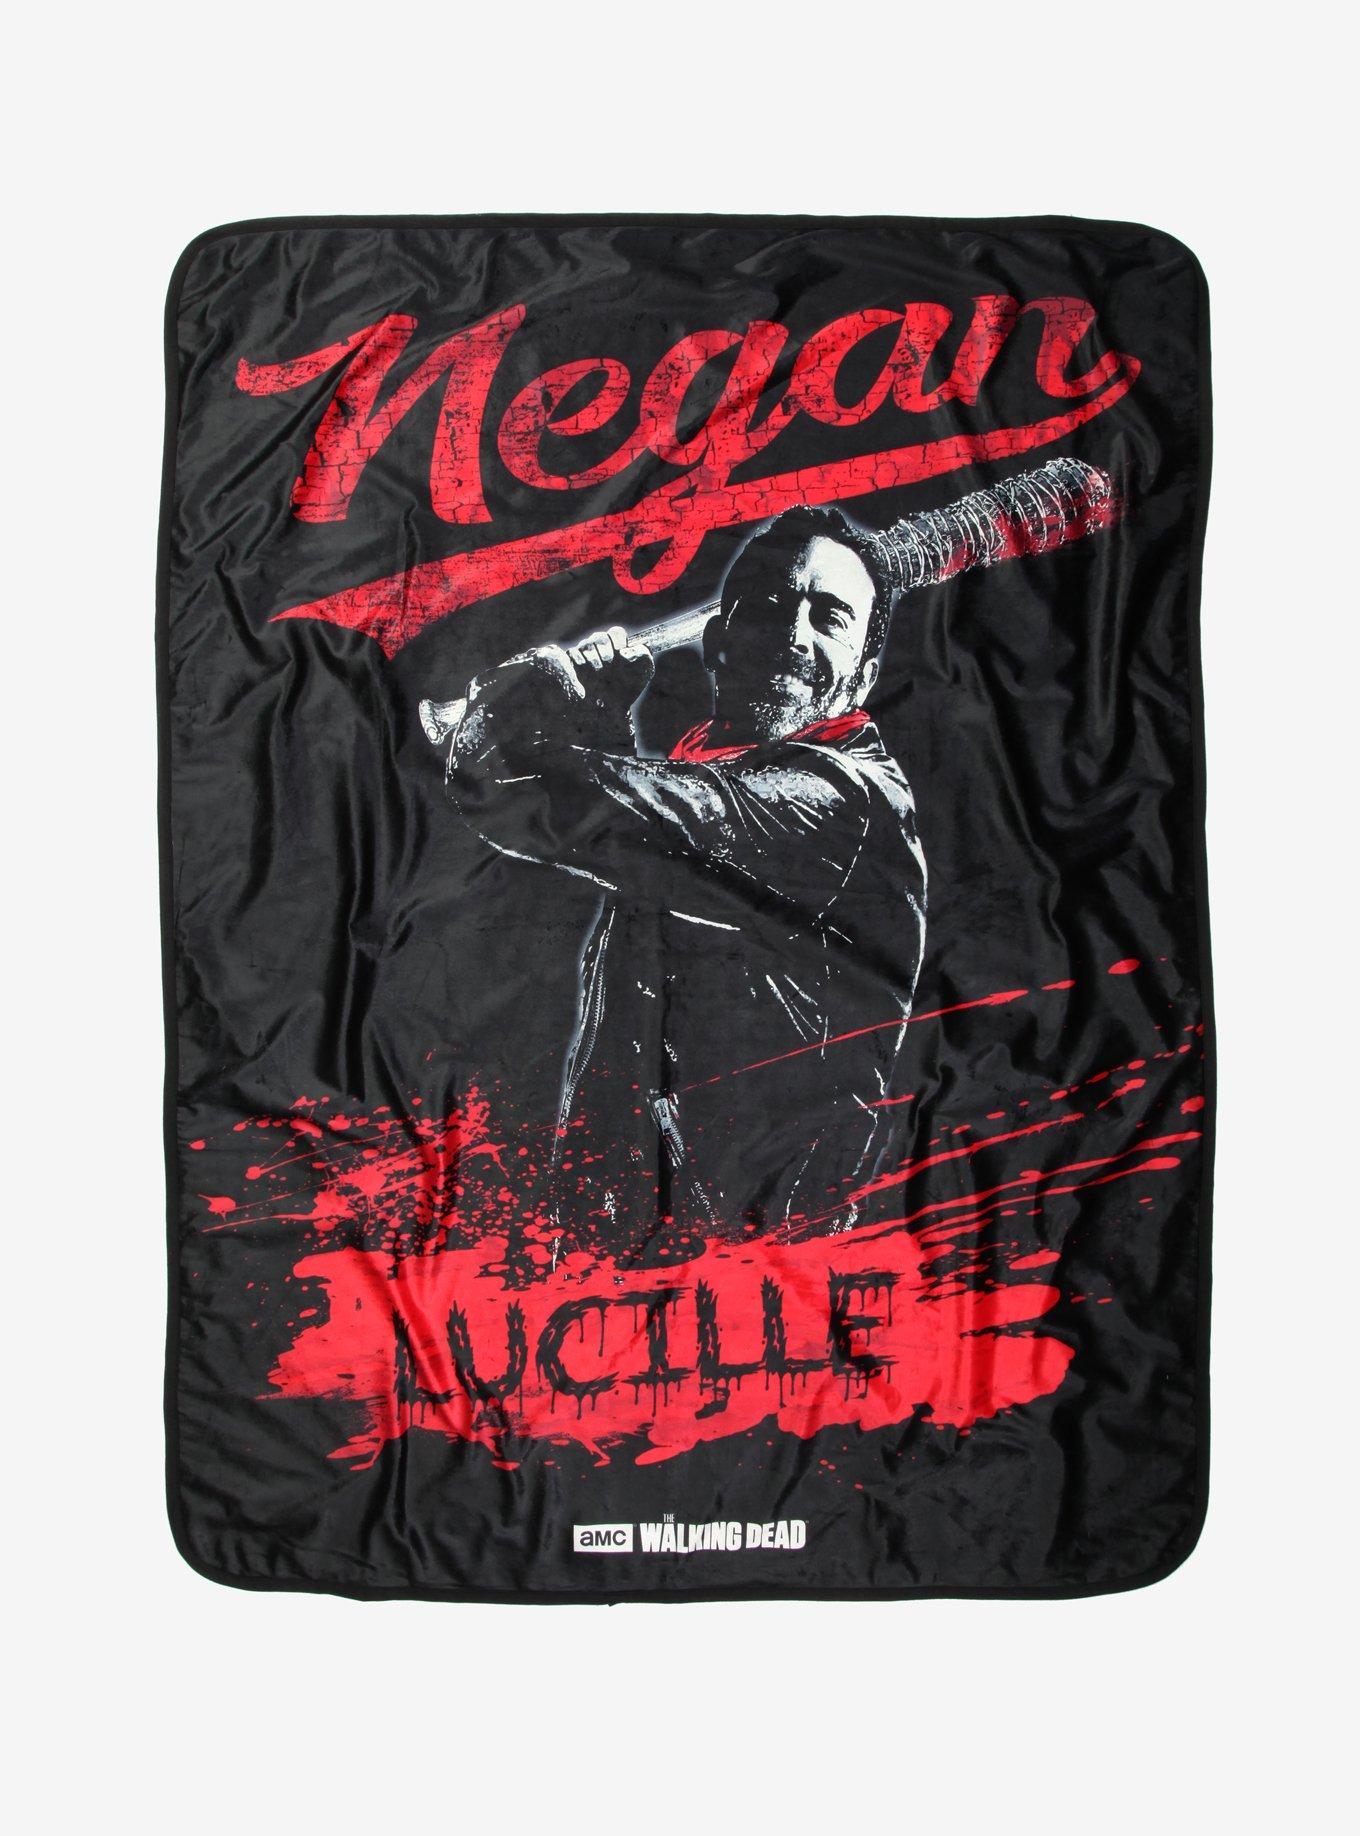 The Walking Dead Negan Fleece Throw Blanket, , hi-res